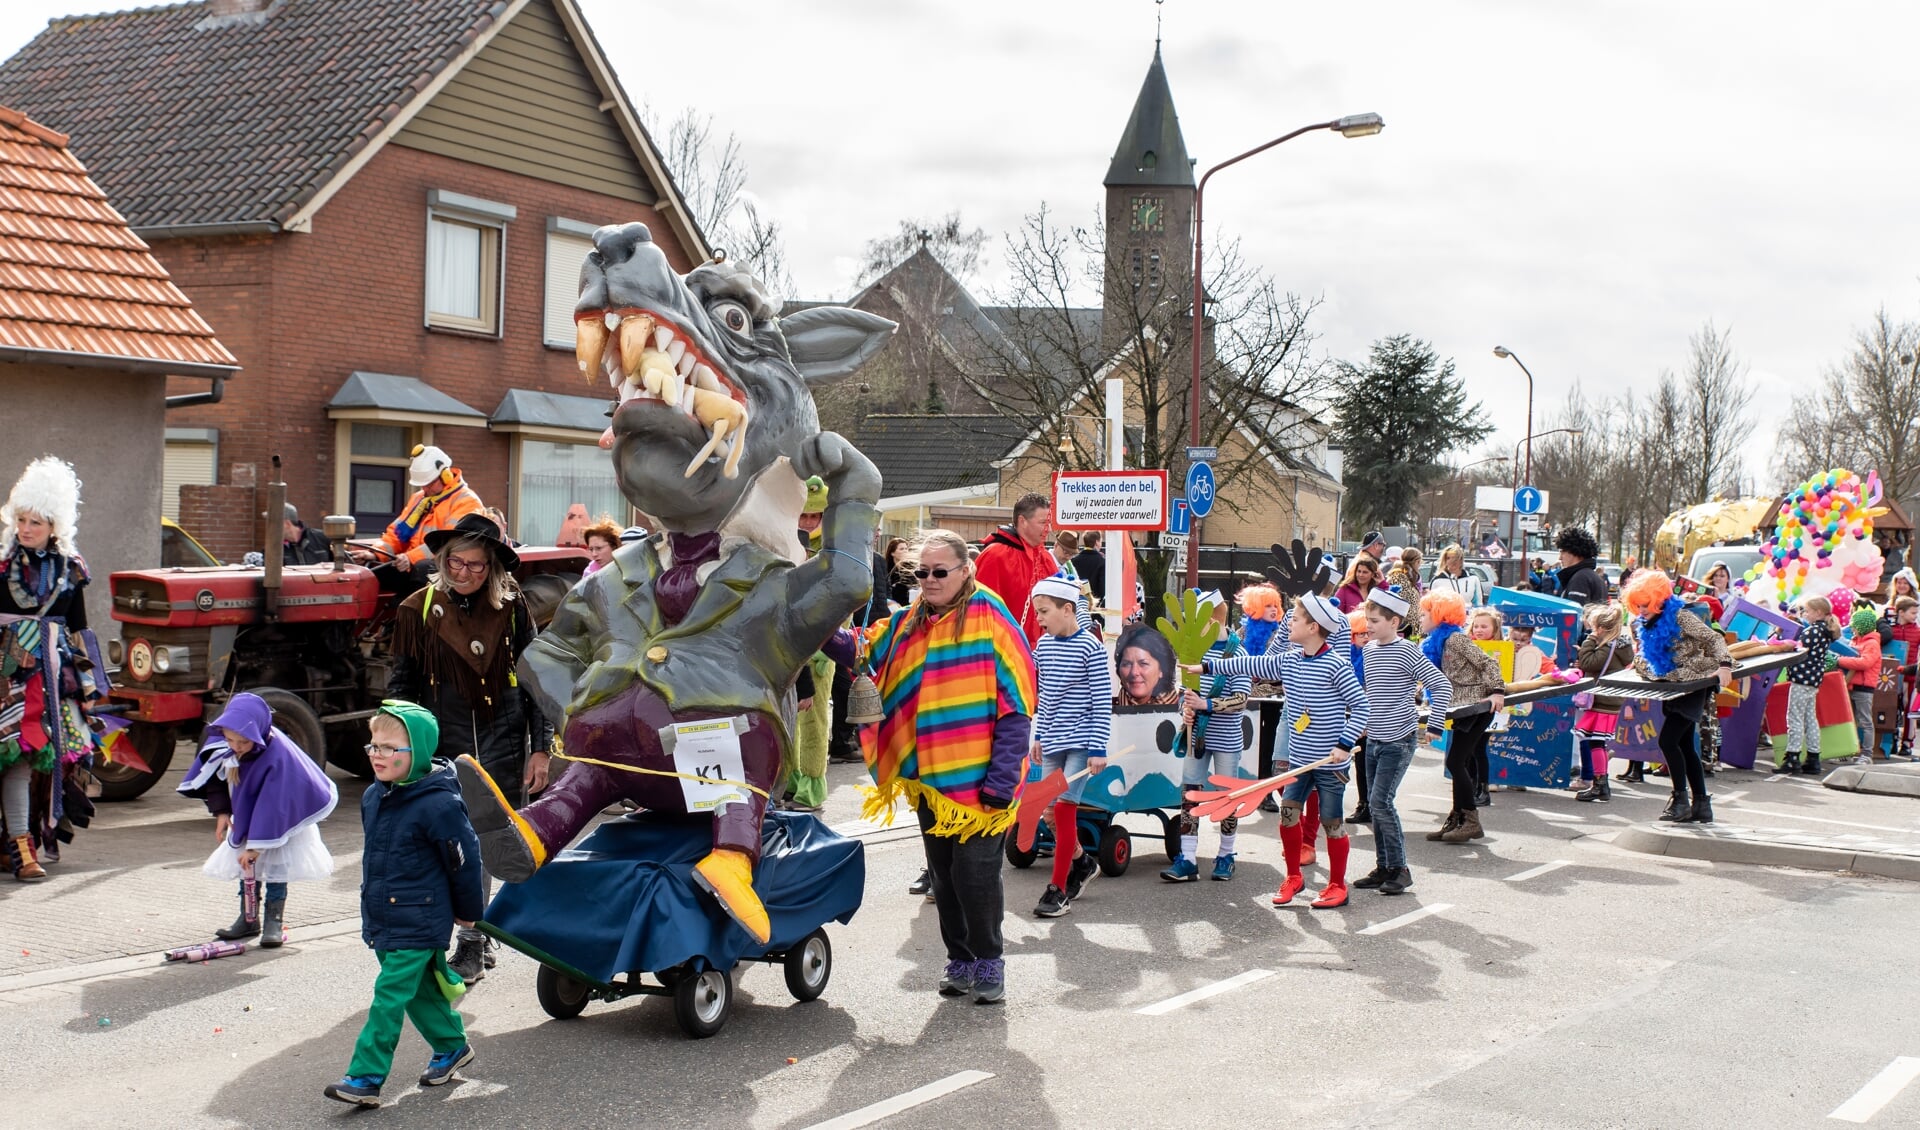 'Trekkes aon dun bel!', luidde in 2019 het motto van de carnavalsvierders in Zaantaozelaant. 